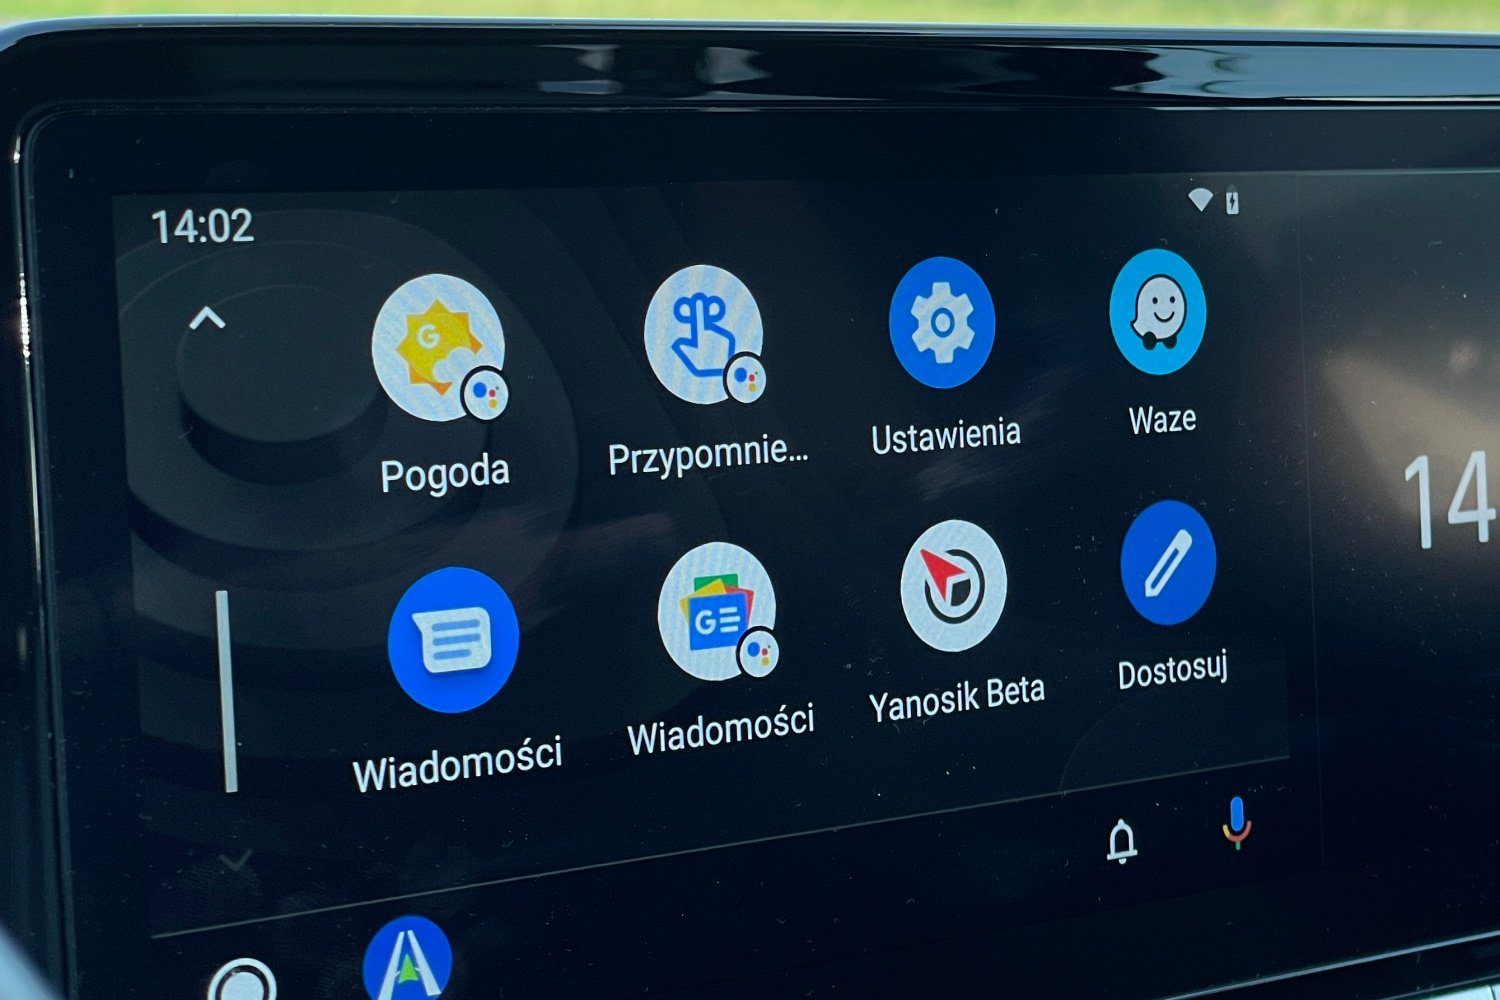 Yanosik in Android Auto für alle verfügbar! Leider immer noch mit Fehlern 139